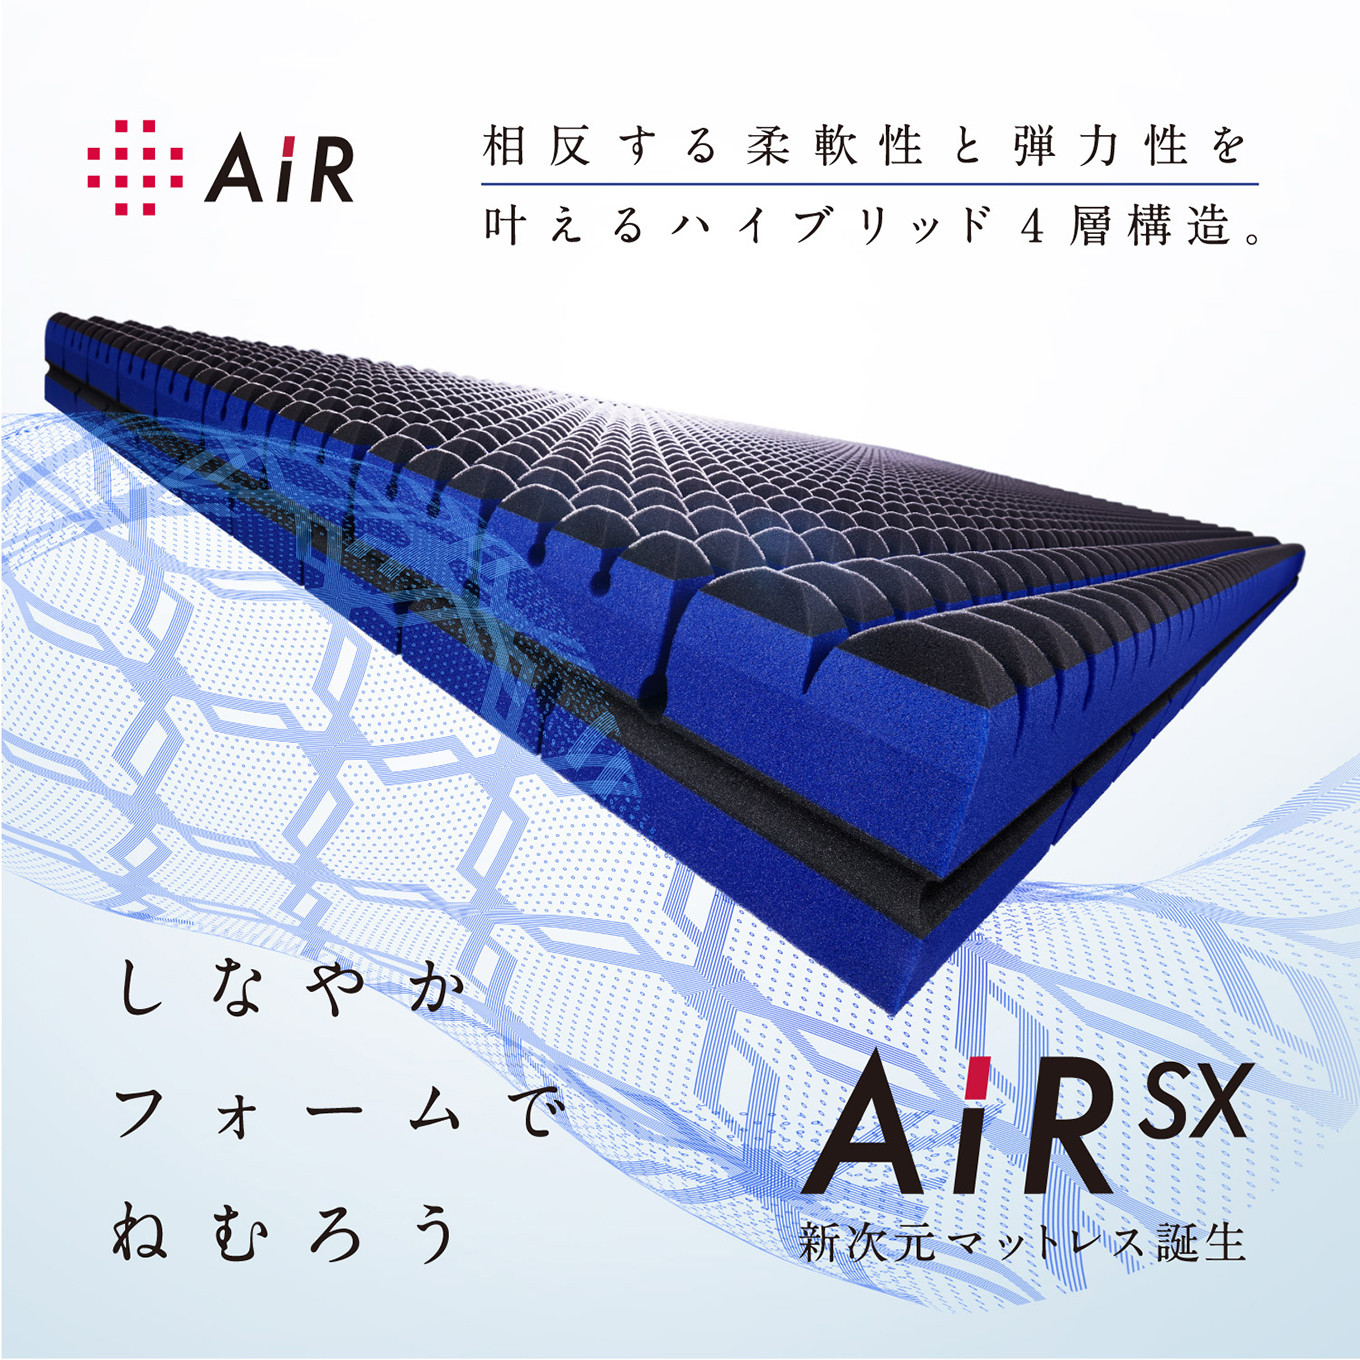 Air03【期間限定値下げ】西川エアー03マットレス ハード ダブルサイズ